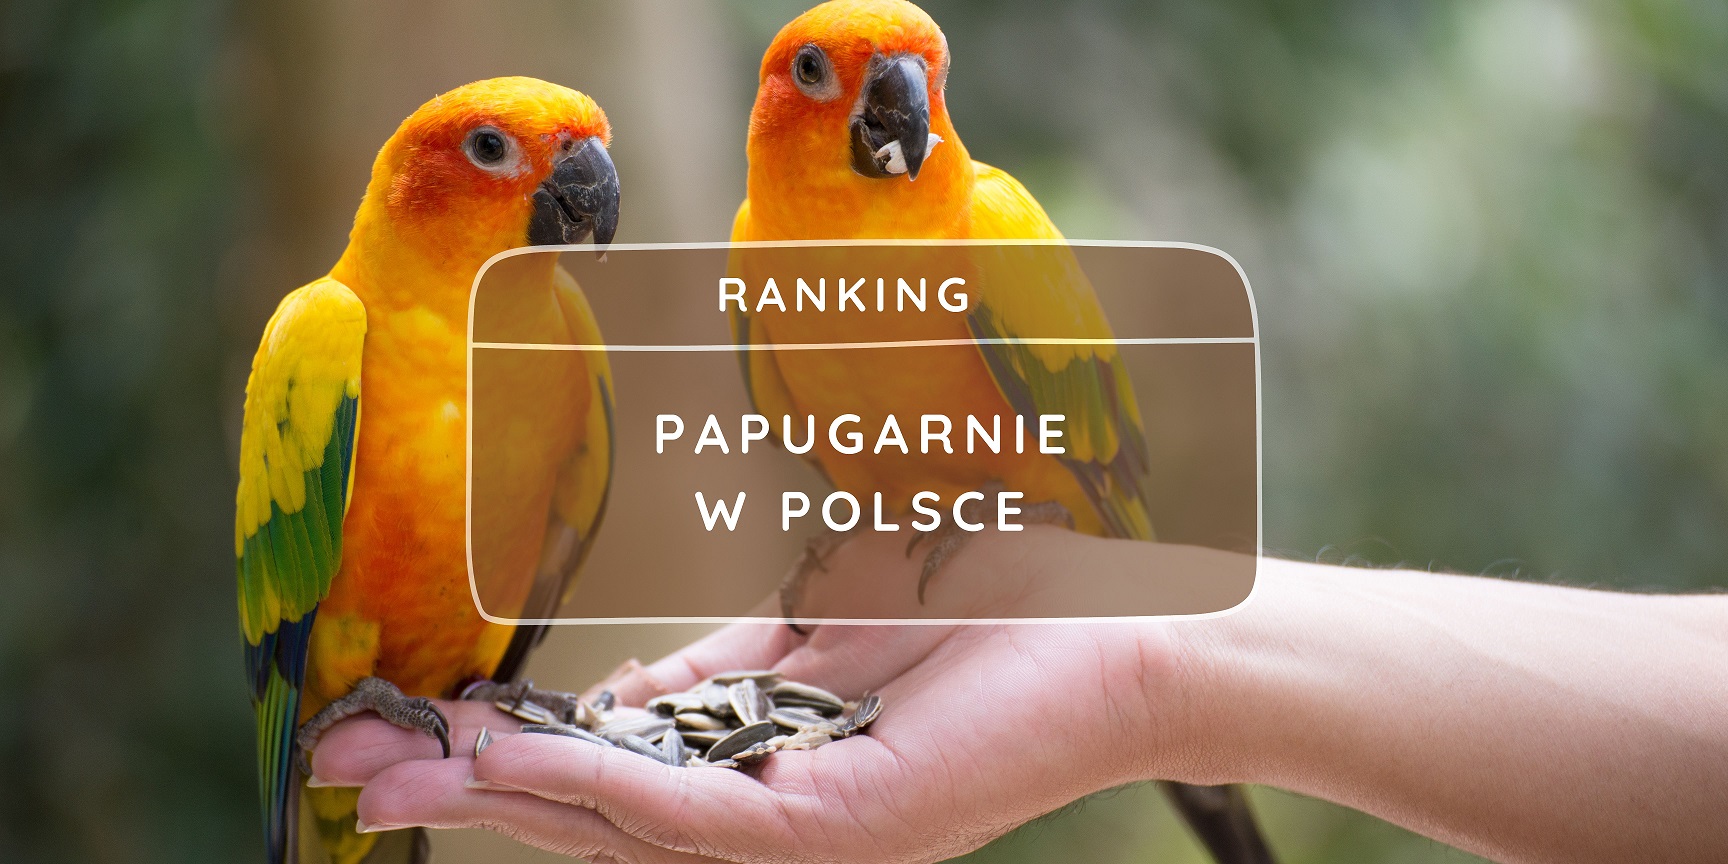 Papugarnie w Polsce